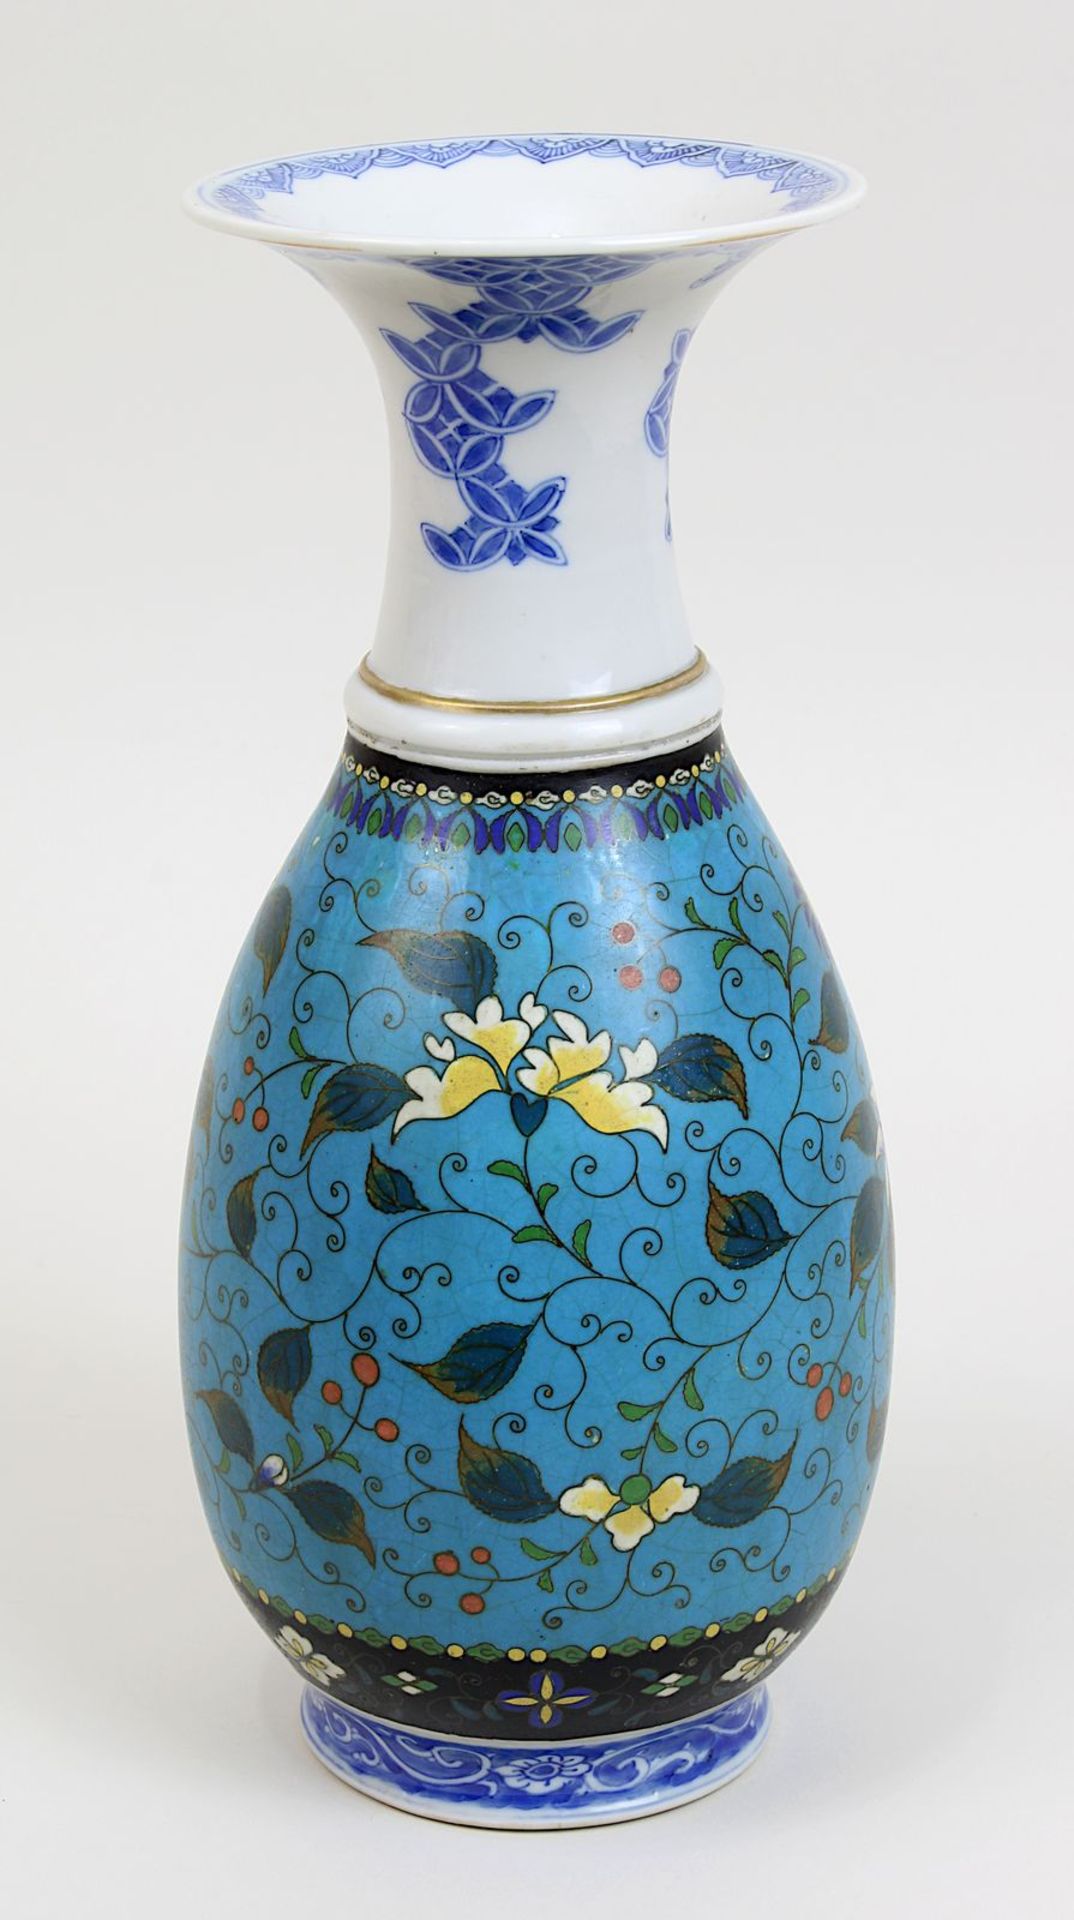 Chinesische Porzellanvase mit Cloisonnéwandung, China 19. Jh., Porzellan weißer Scherben, glasiert - Bild 2 aus 3